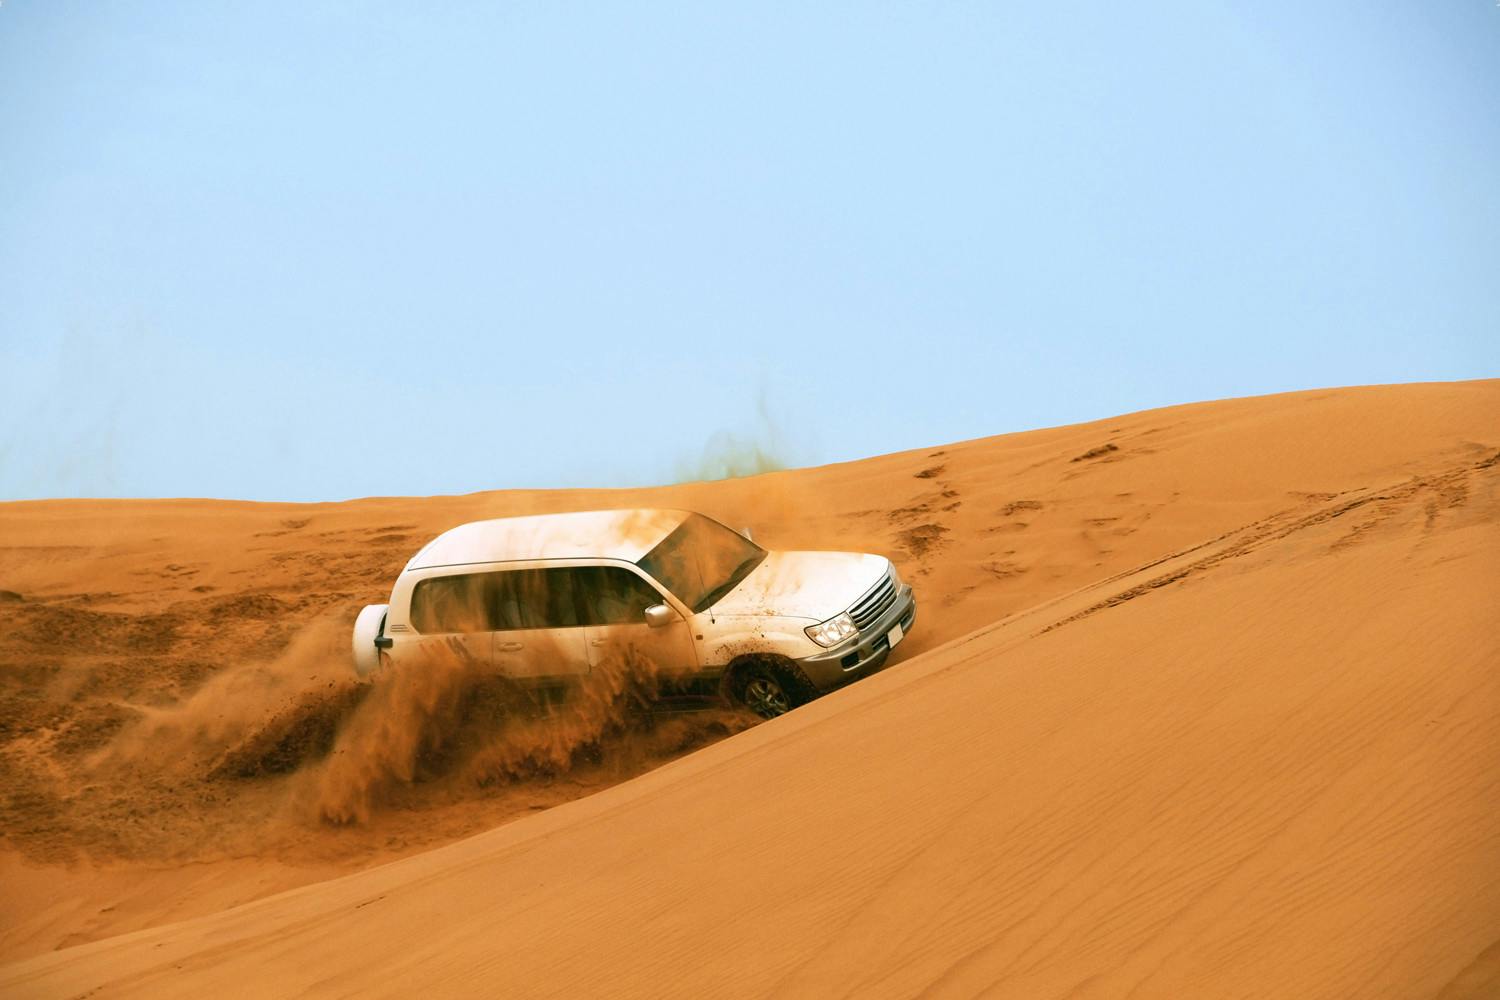 Dubai desert safari MyPassUAE dune bashing.jpg